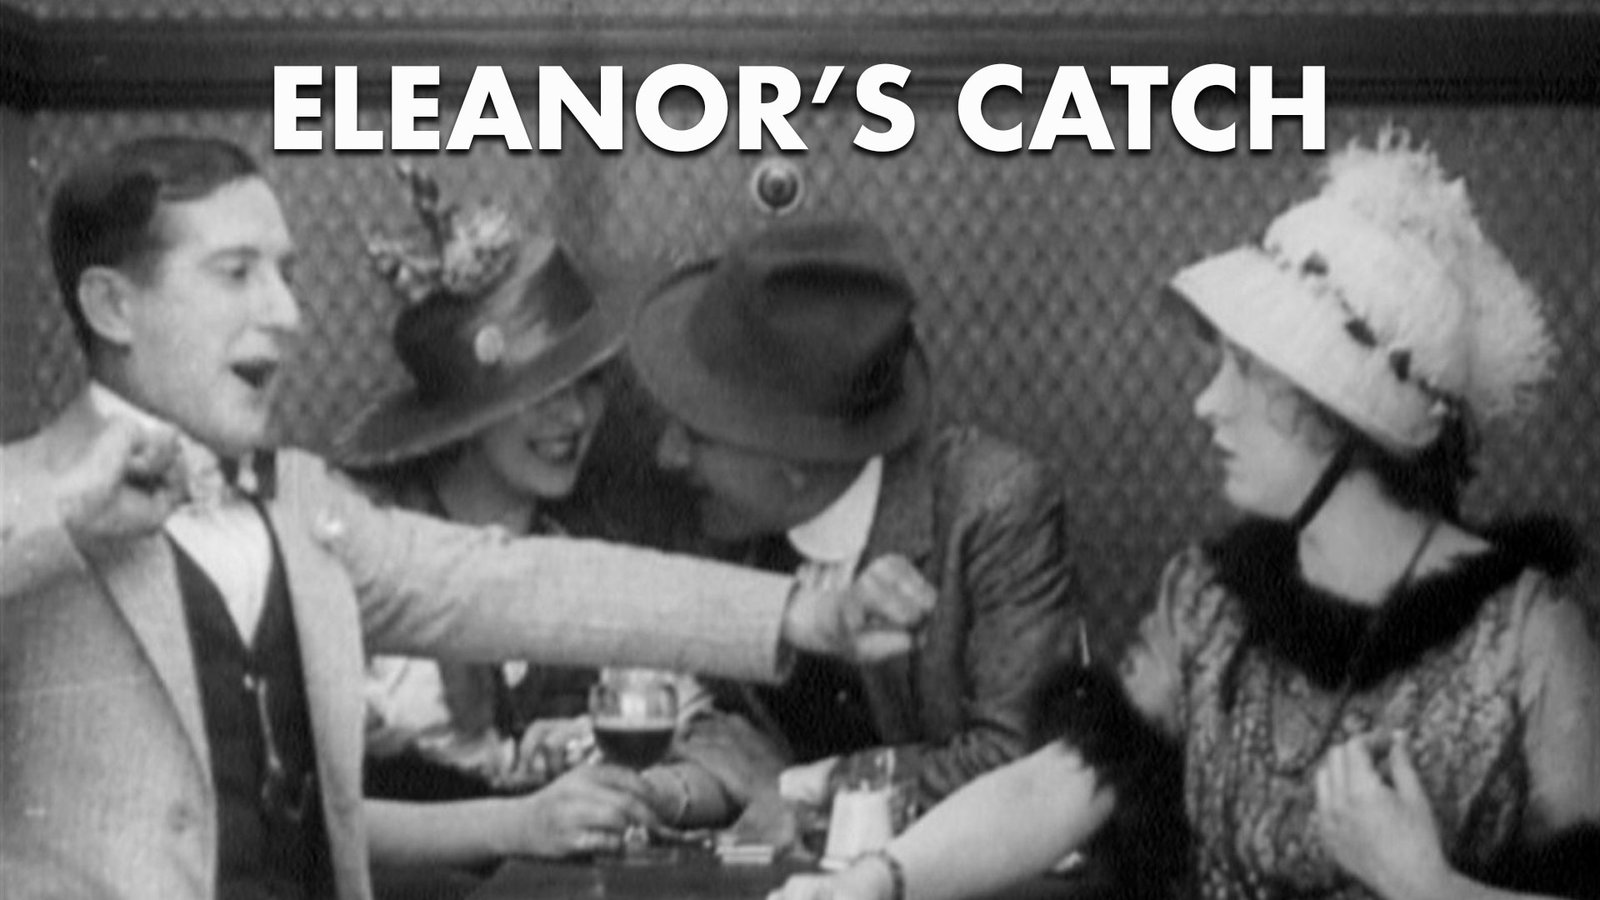 Eleanor's Catch